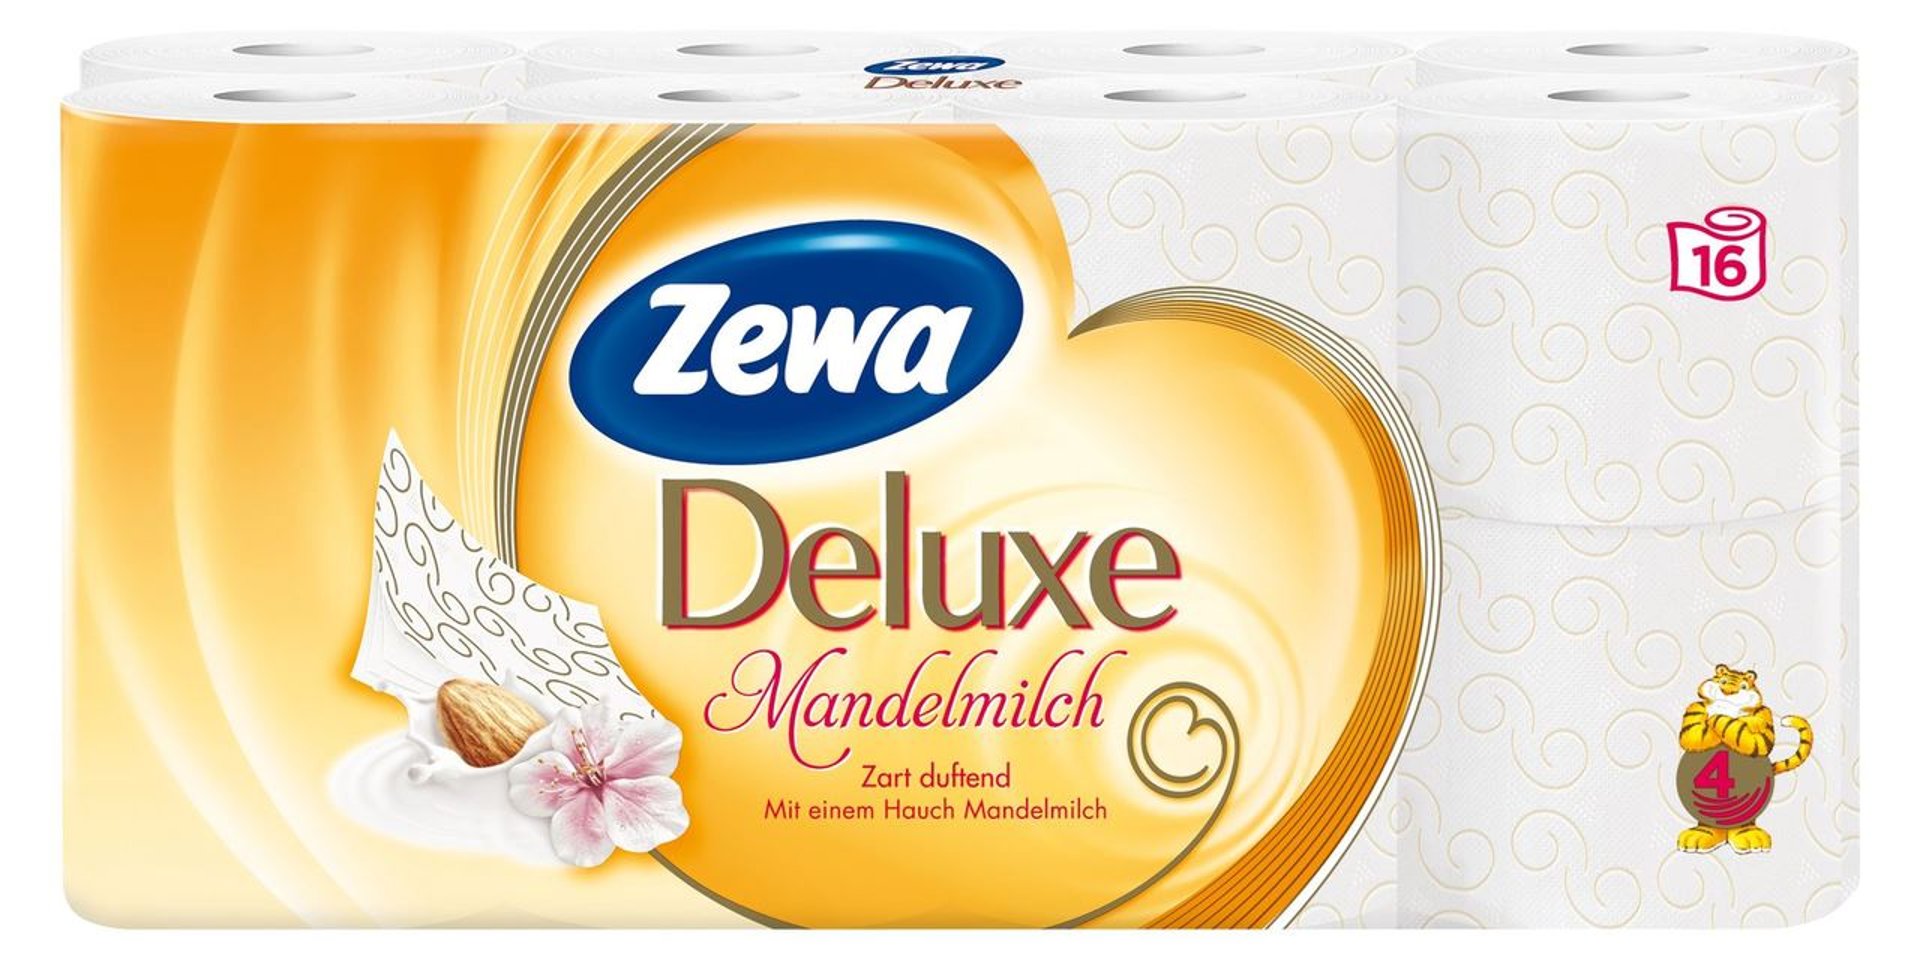 Zewa Deluxe Mandelmilch Weiß Tissue Papier 4 lagig 16 Rollen à 135 Blatt